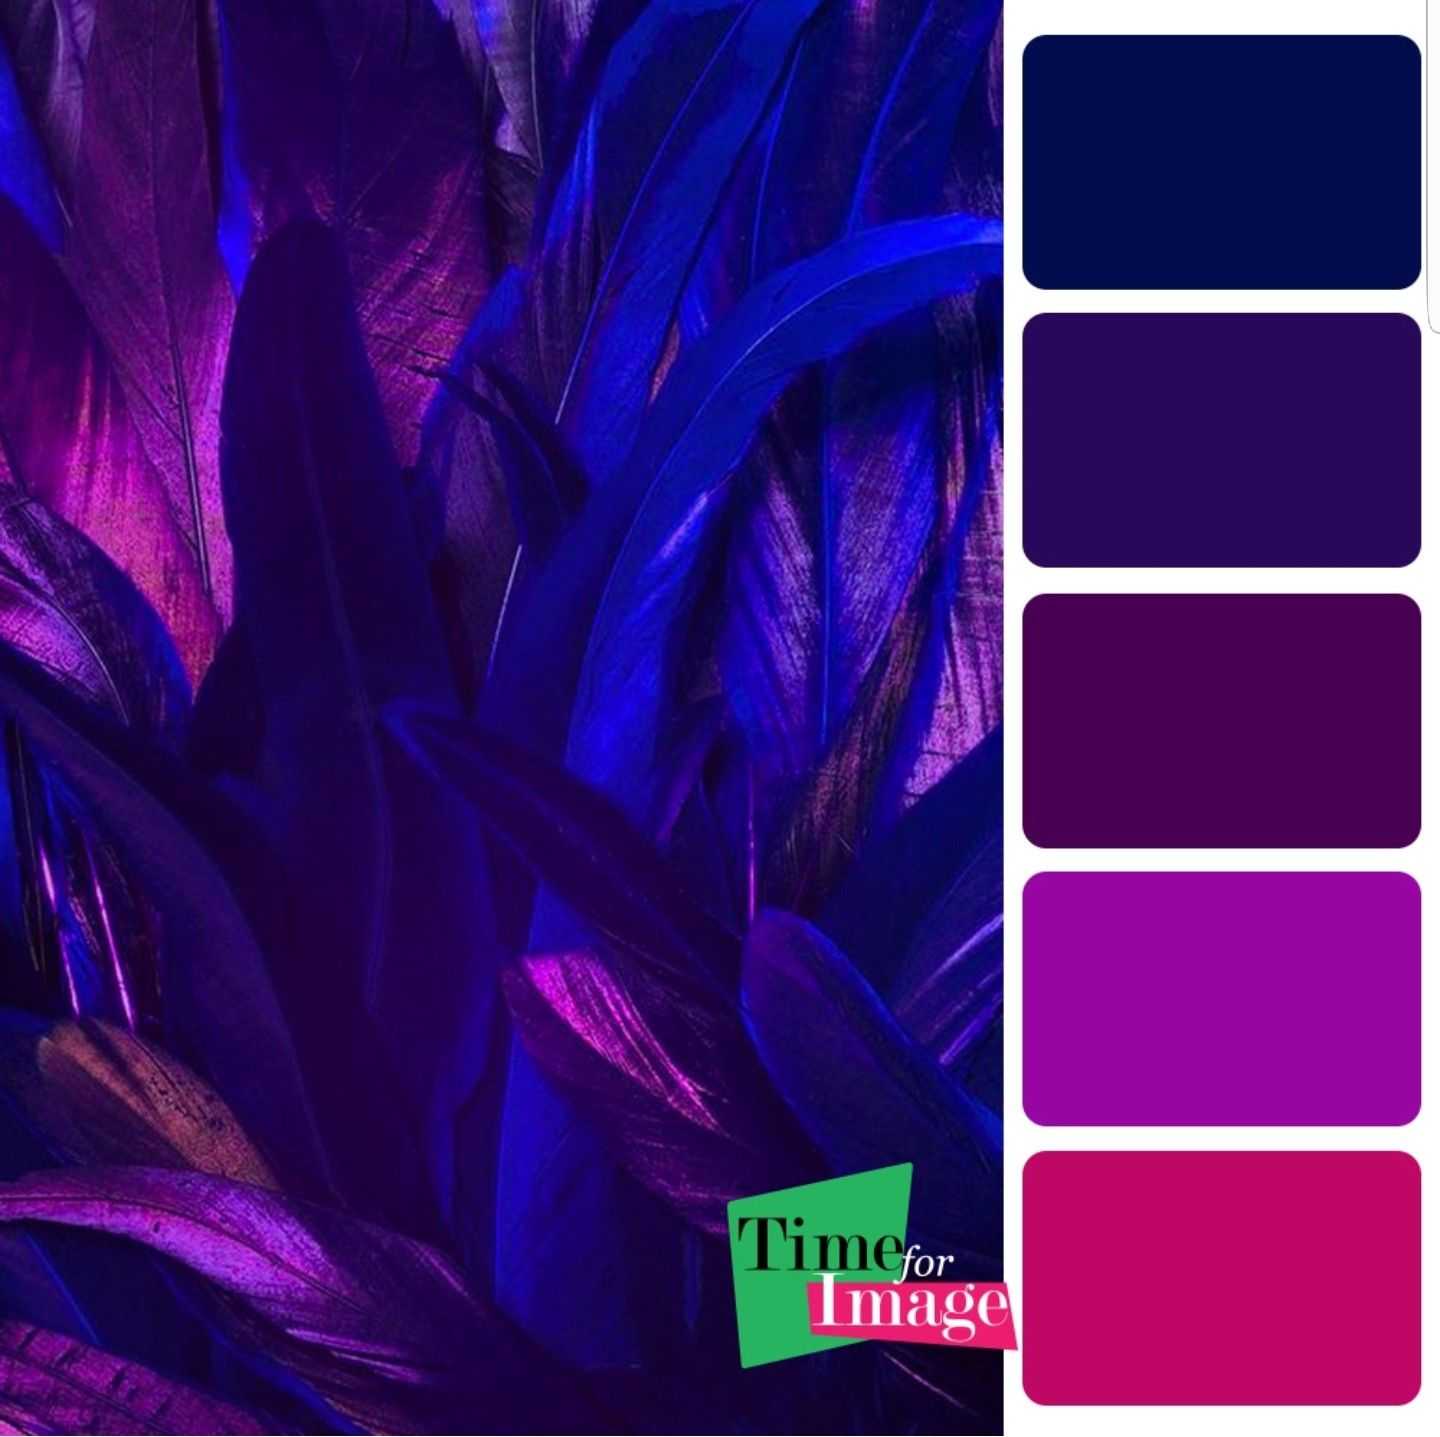 Темно фиолетовый цвет волос- магия окрашивания!